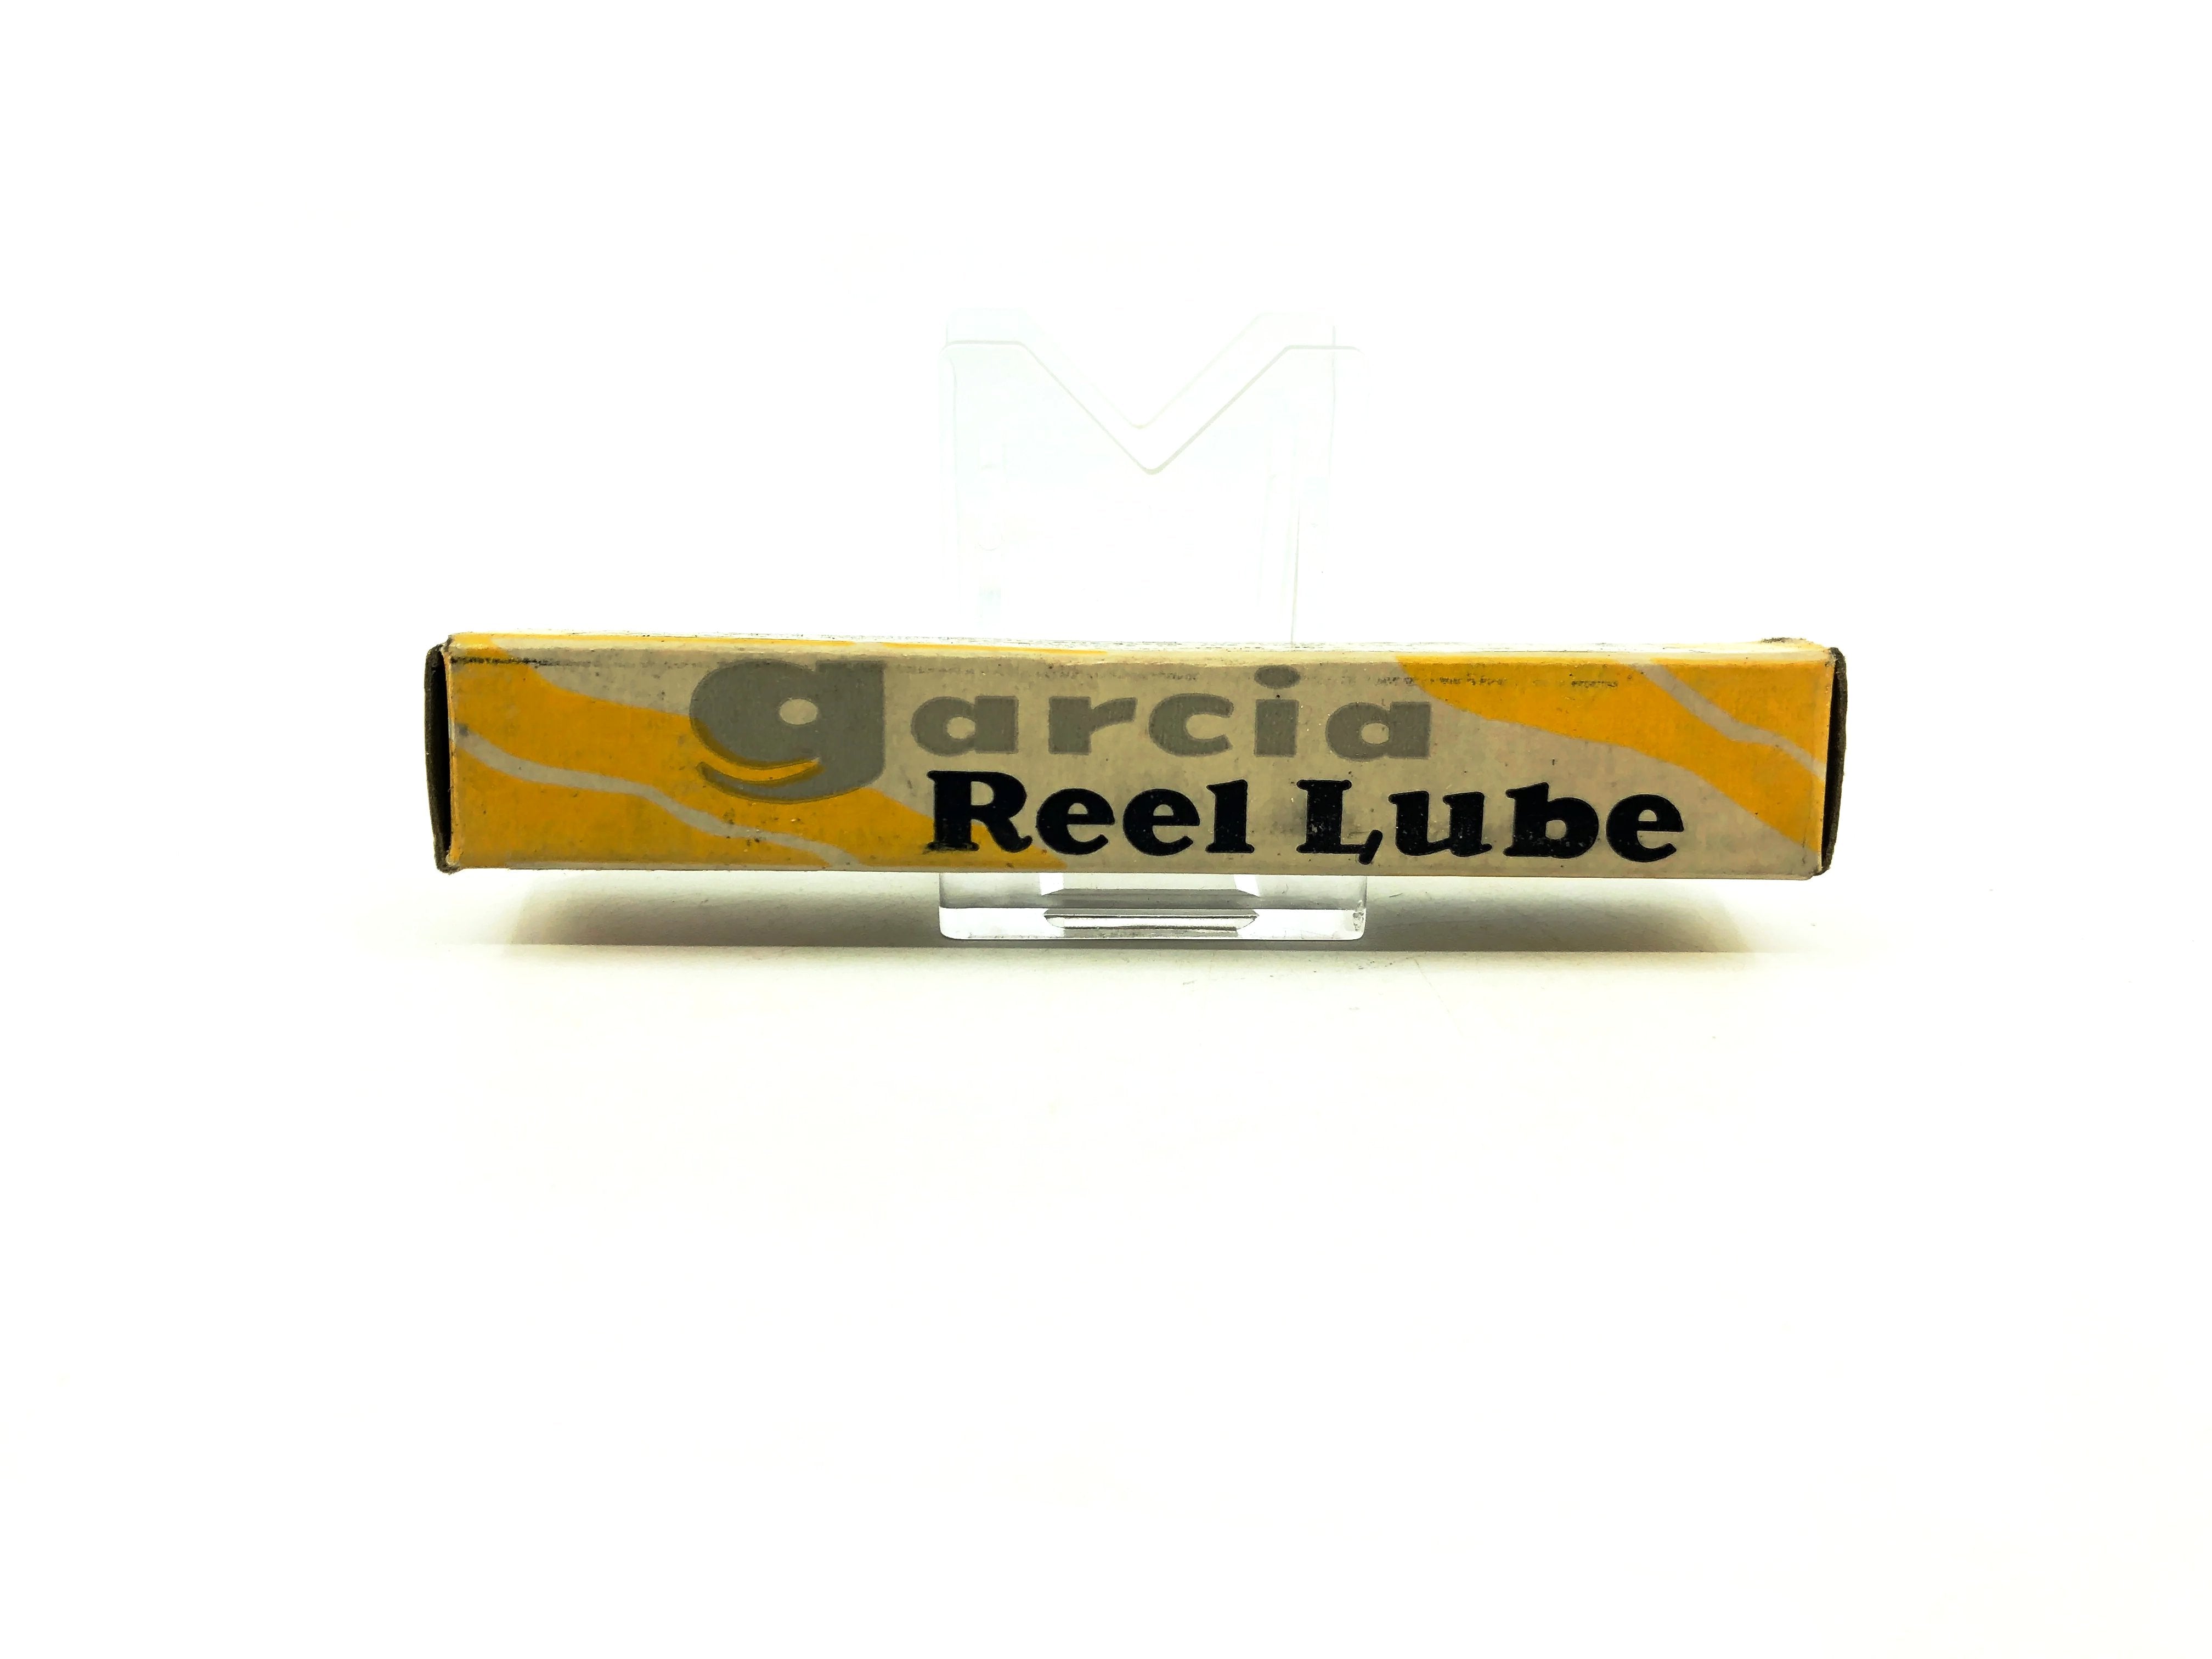 Garcia Vintage Reel Lube Unopened Package – My Bait Shop, LLC